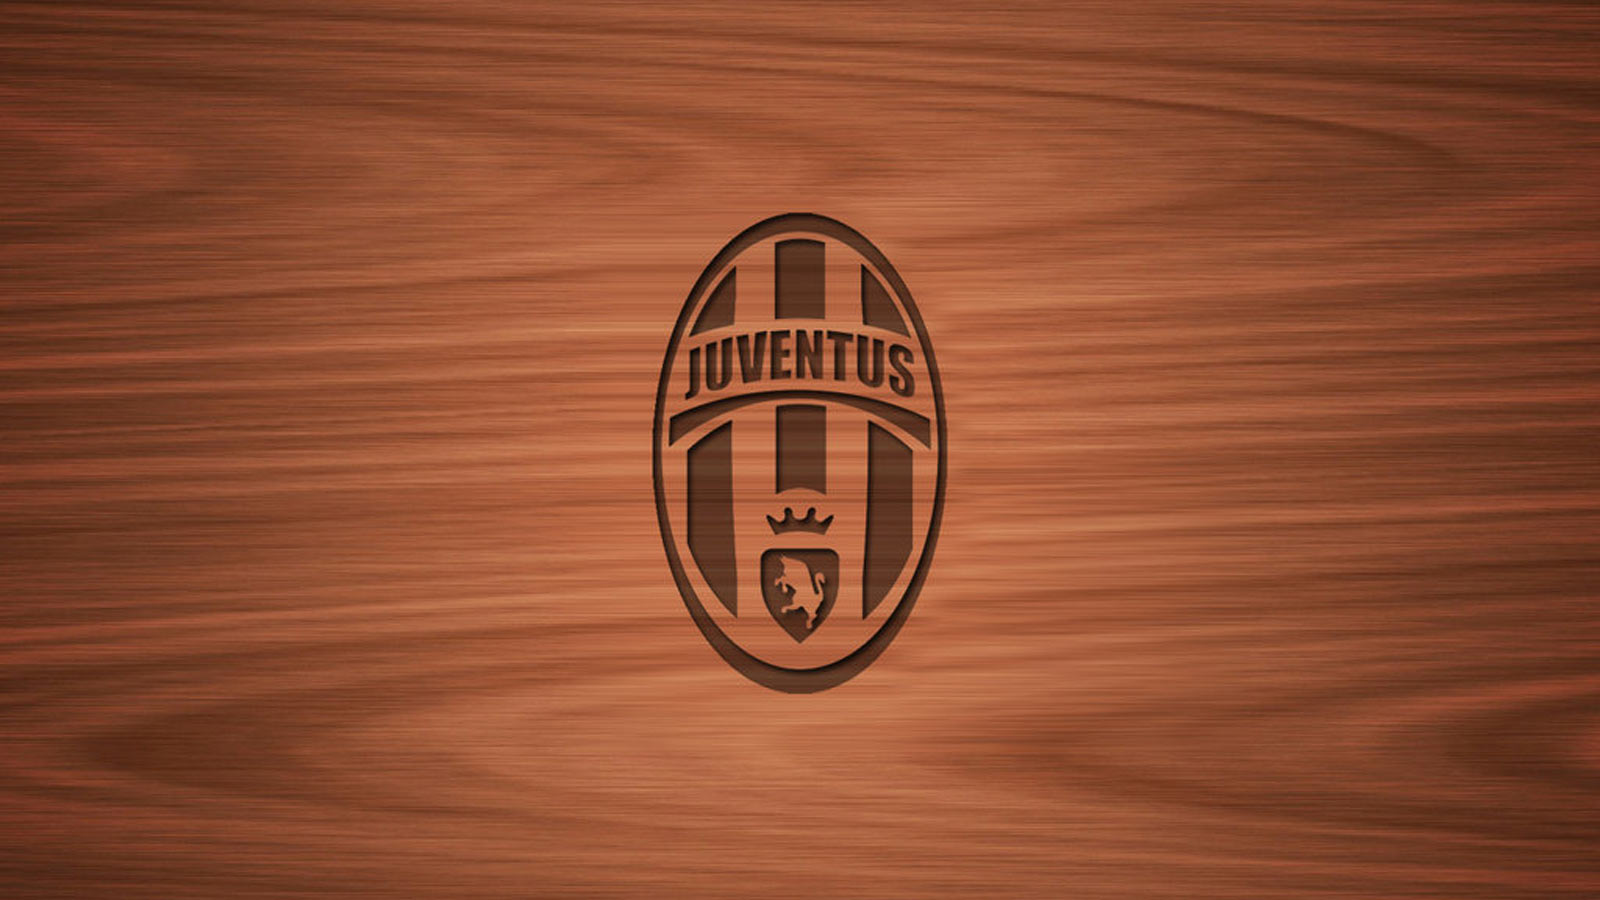 Juventus Art Logo Wallpaper Background With